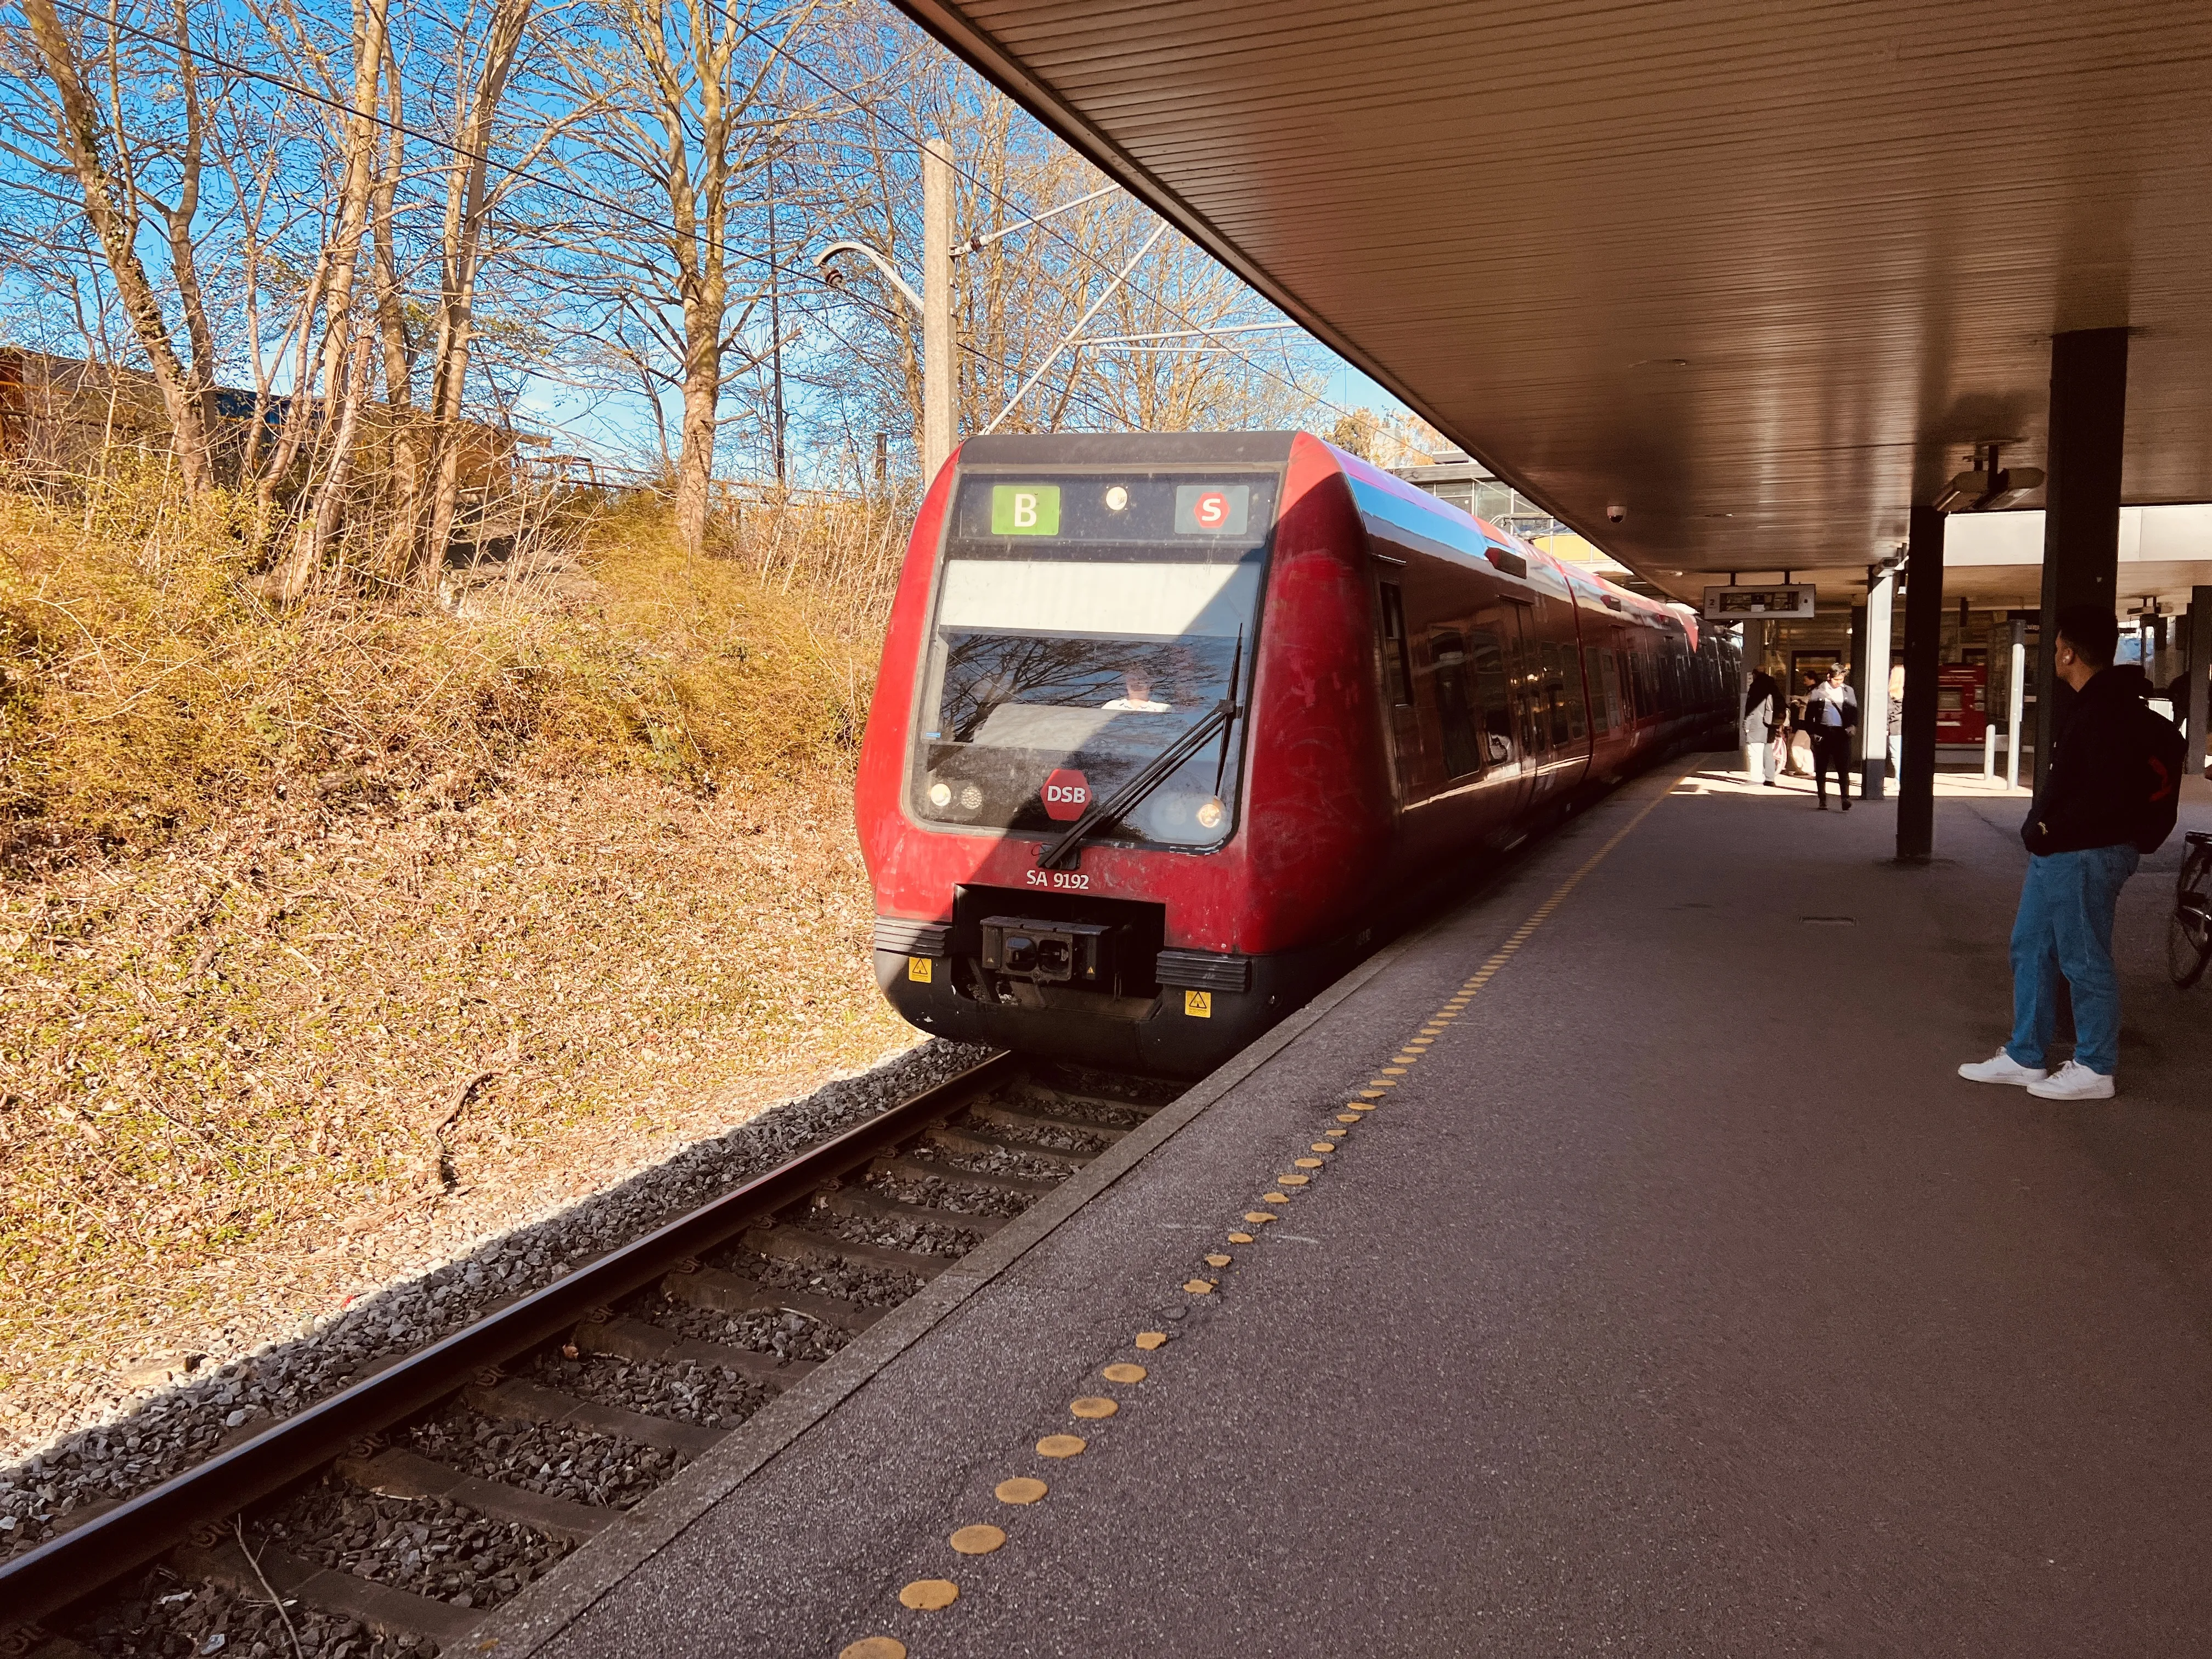 Billede af DSB SA 8192 fotograferet ud for Vangede S-togstrinbræt.